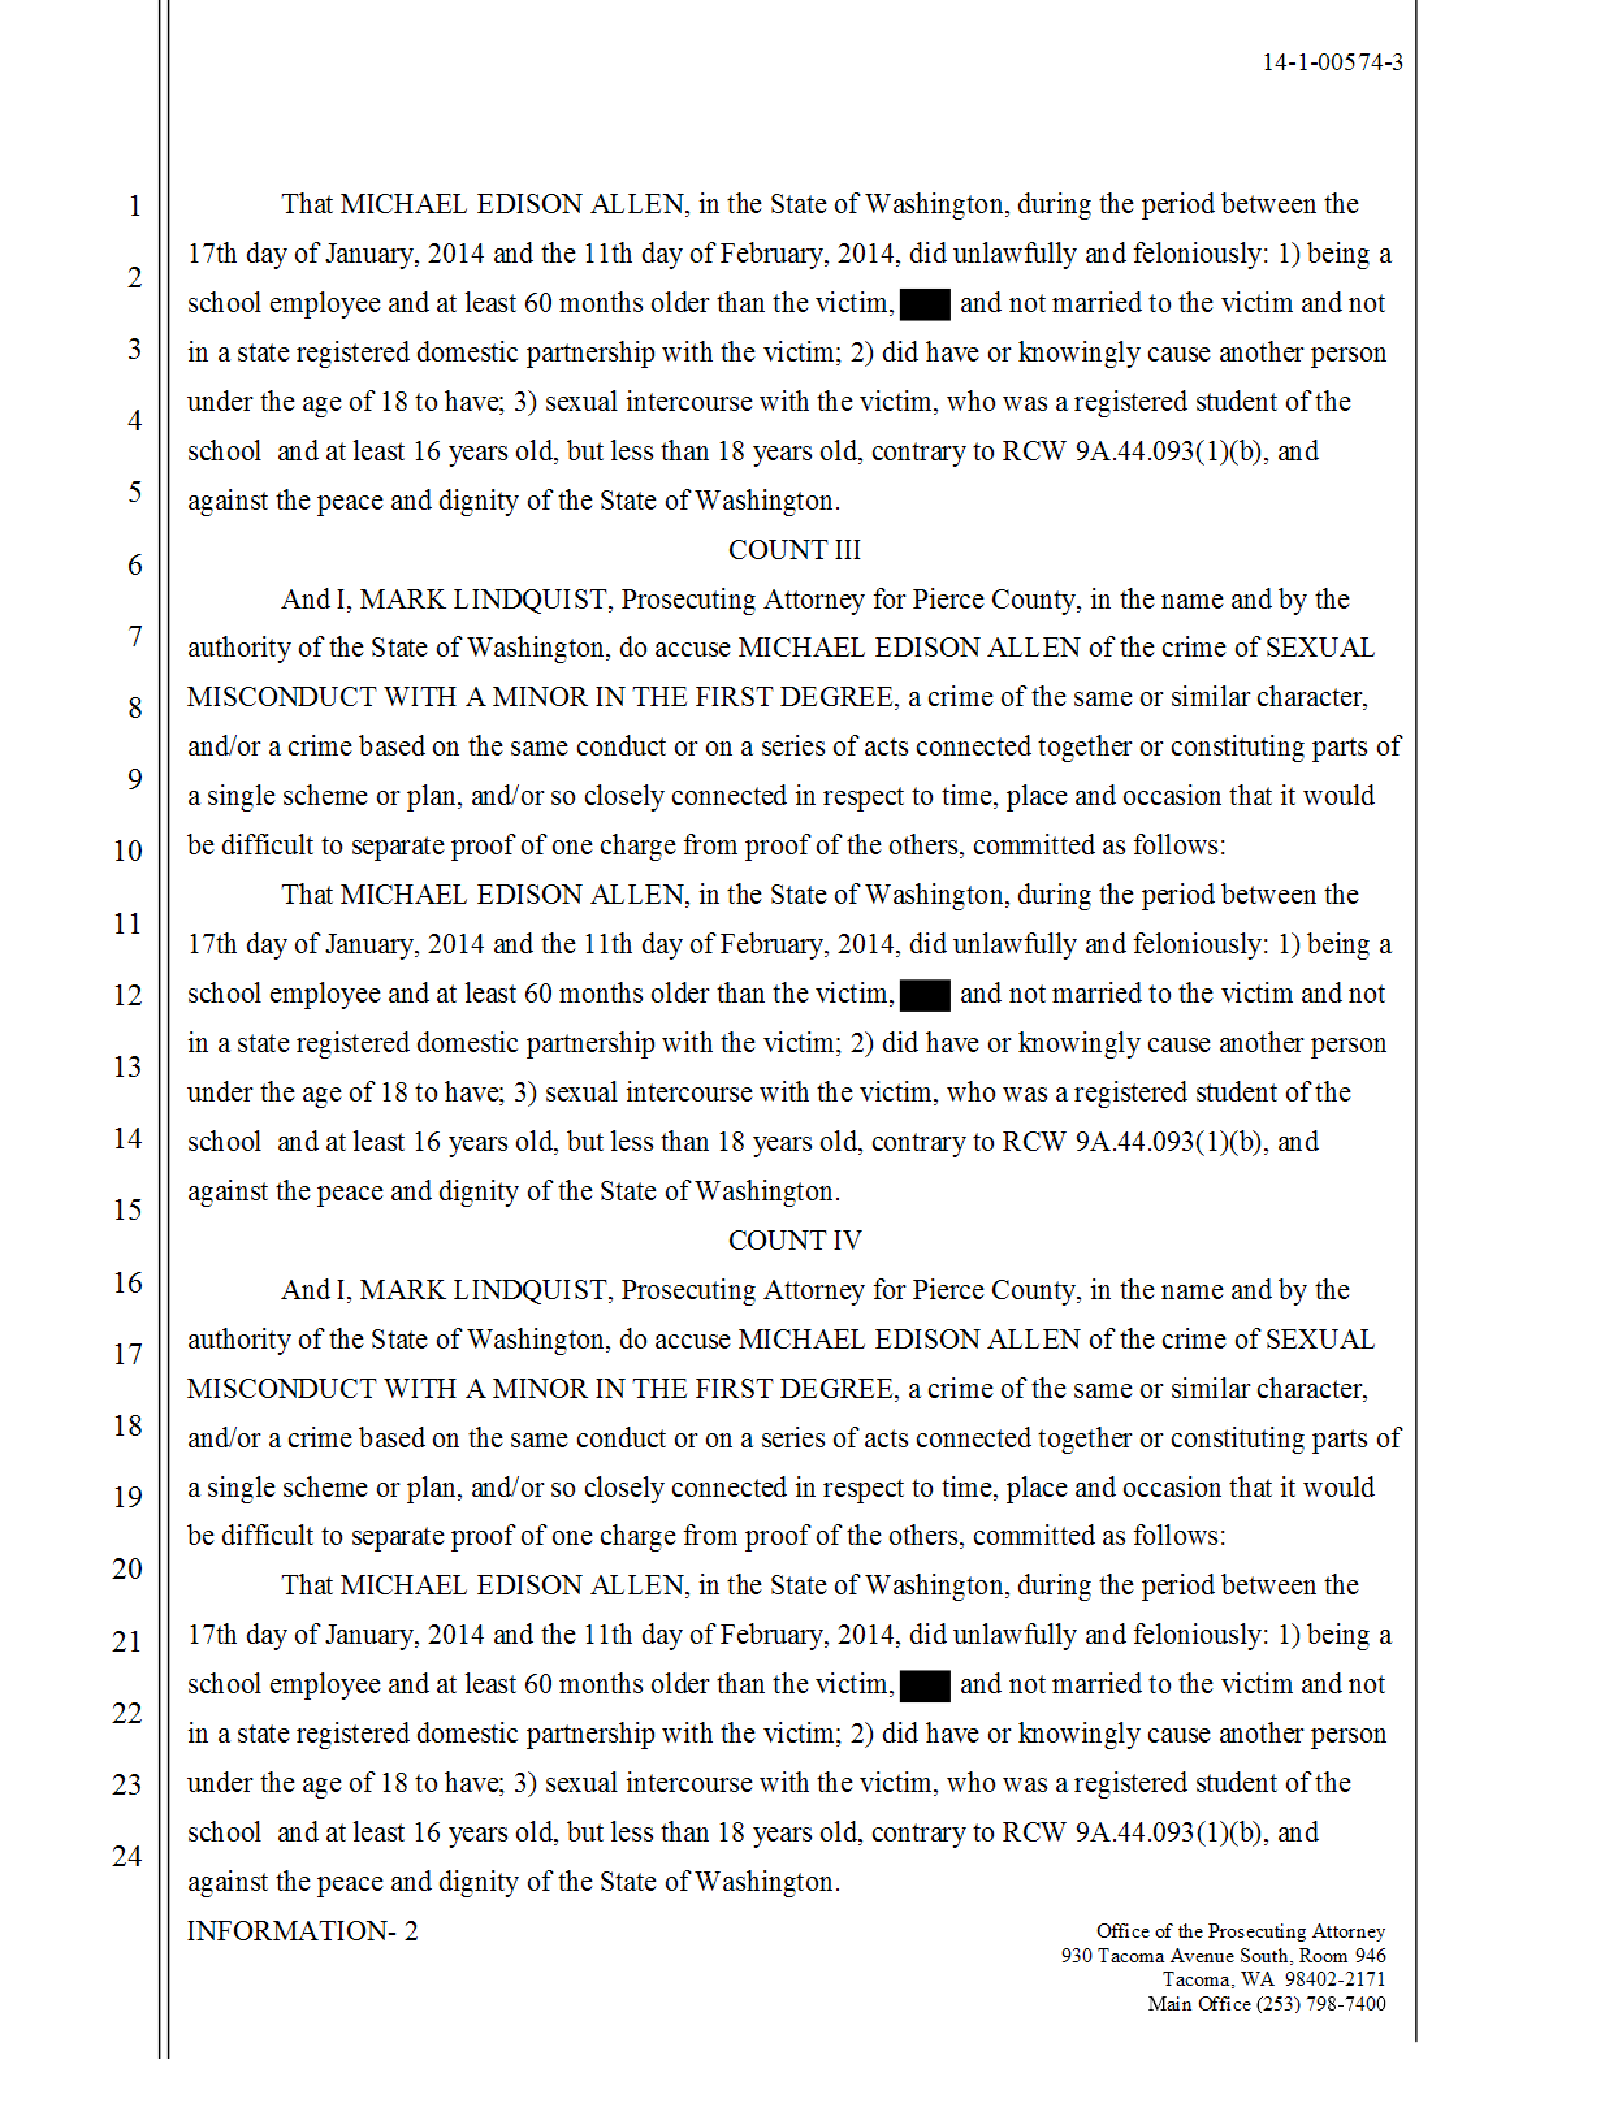 Copy of Allen Michael probable cause affidavit3.png